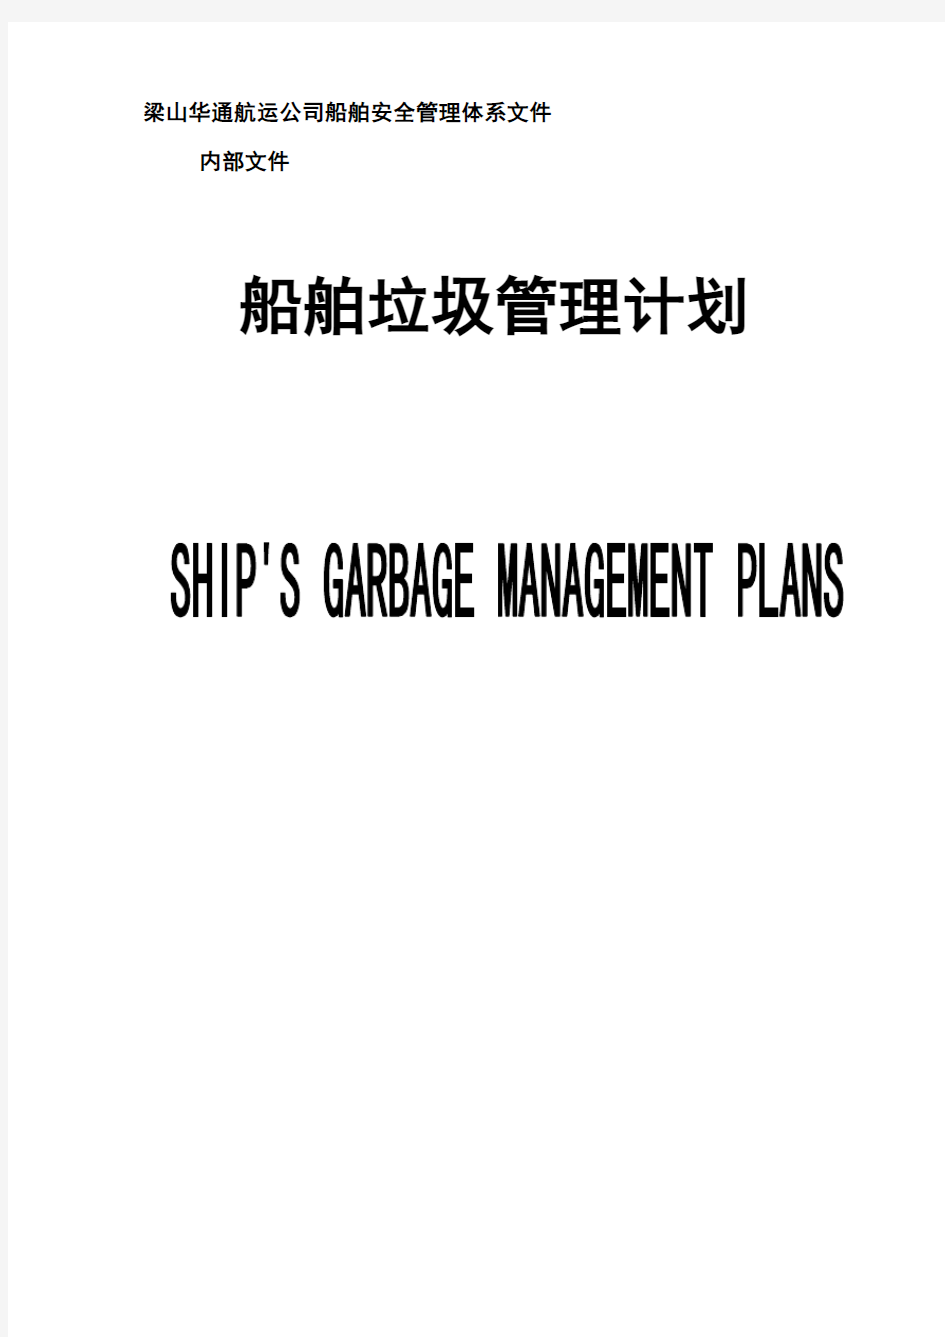 船舶垃圾管理计划